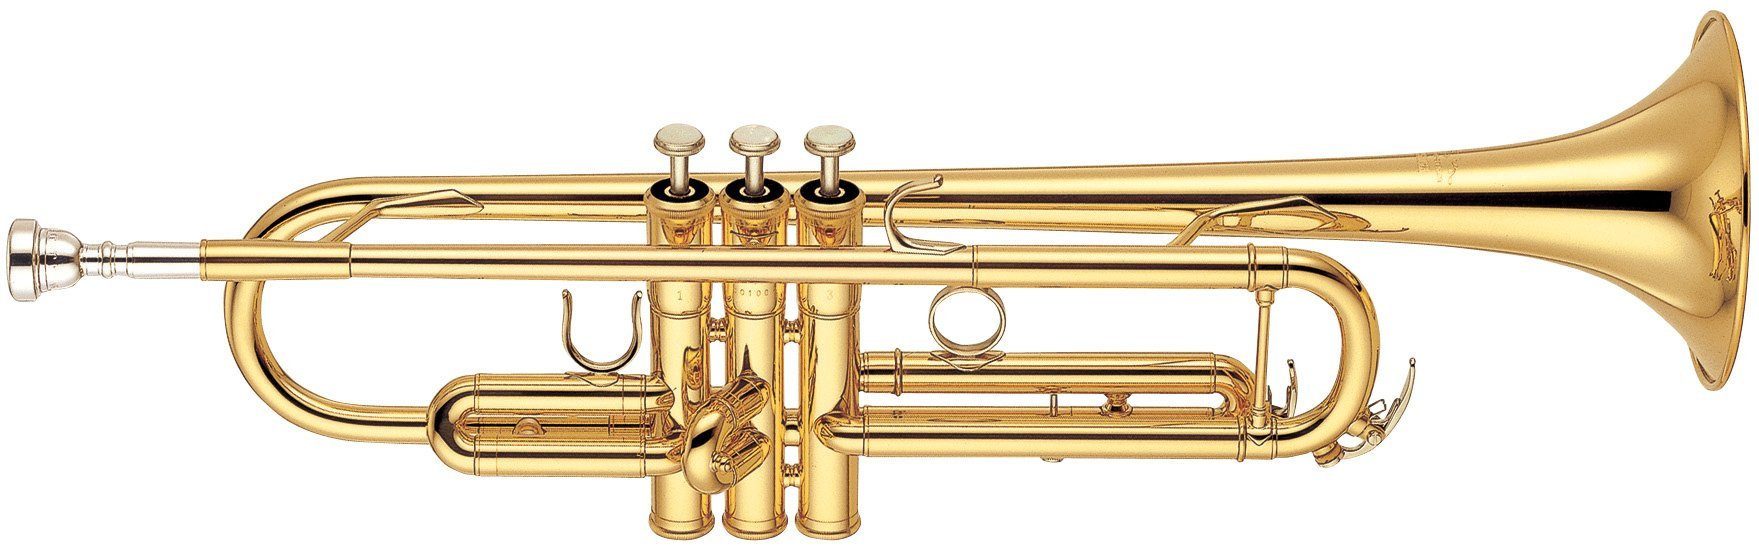 Yamaha YTR-6335  труба Bb профессиональная, средняя, yellow brass, лак - золото